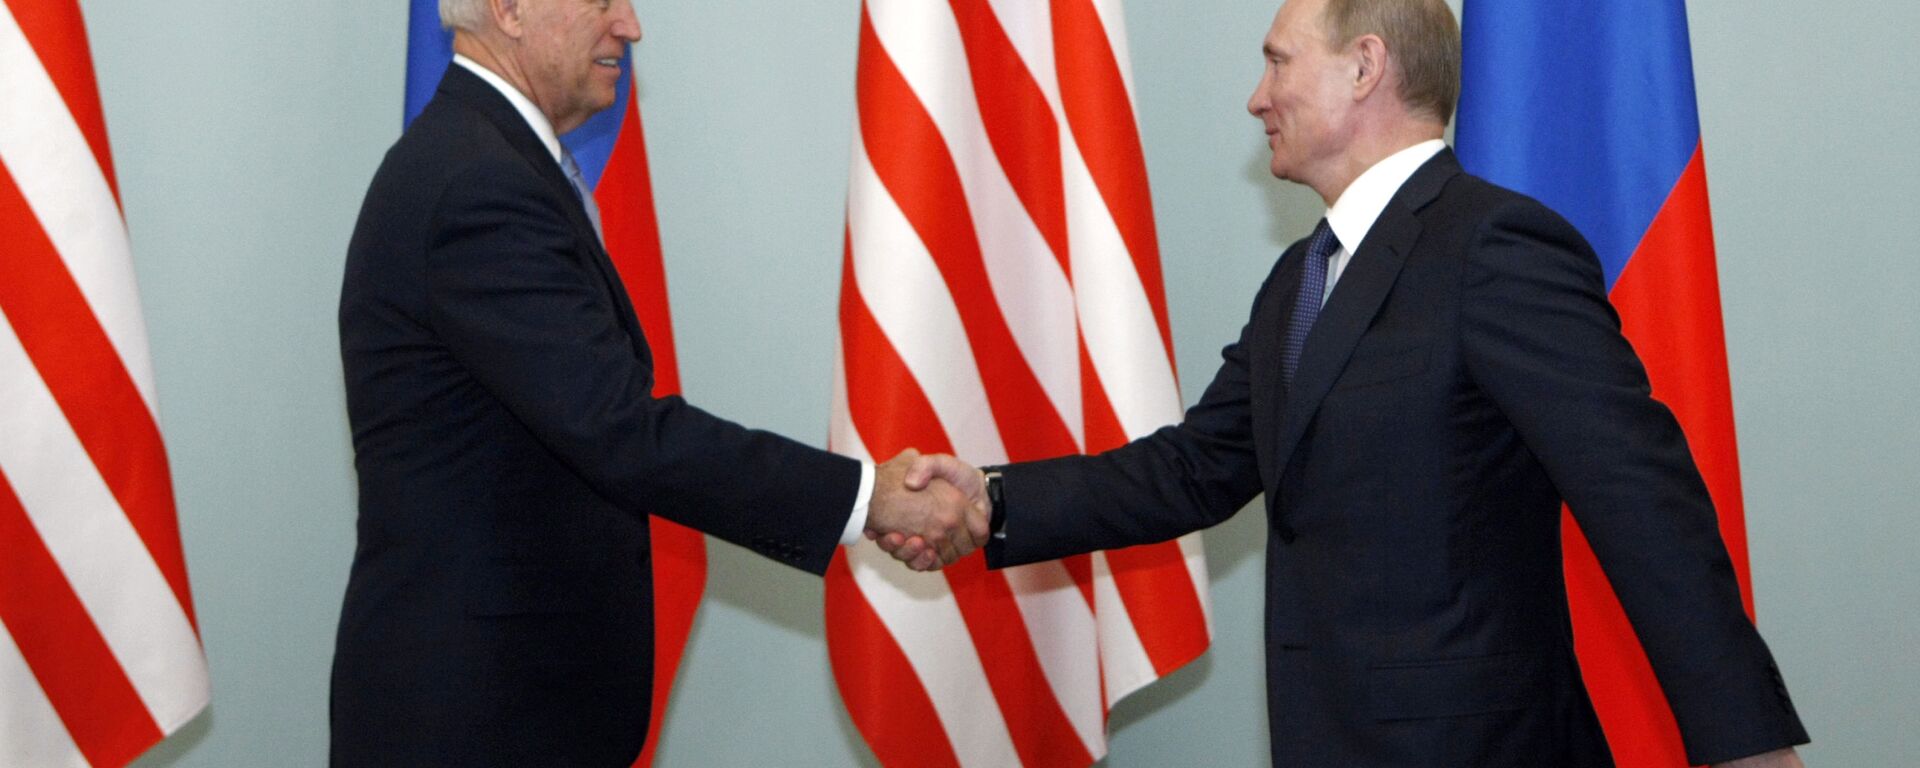  Владимир Путин и Джо Байден во время встречи в 2011 году - Sputnik Молдова, 1920, 15.06.2021